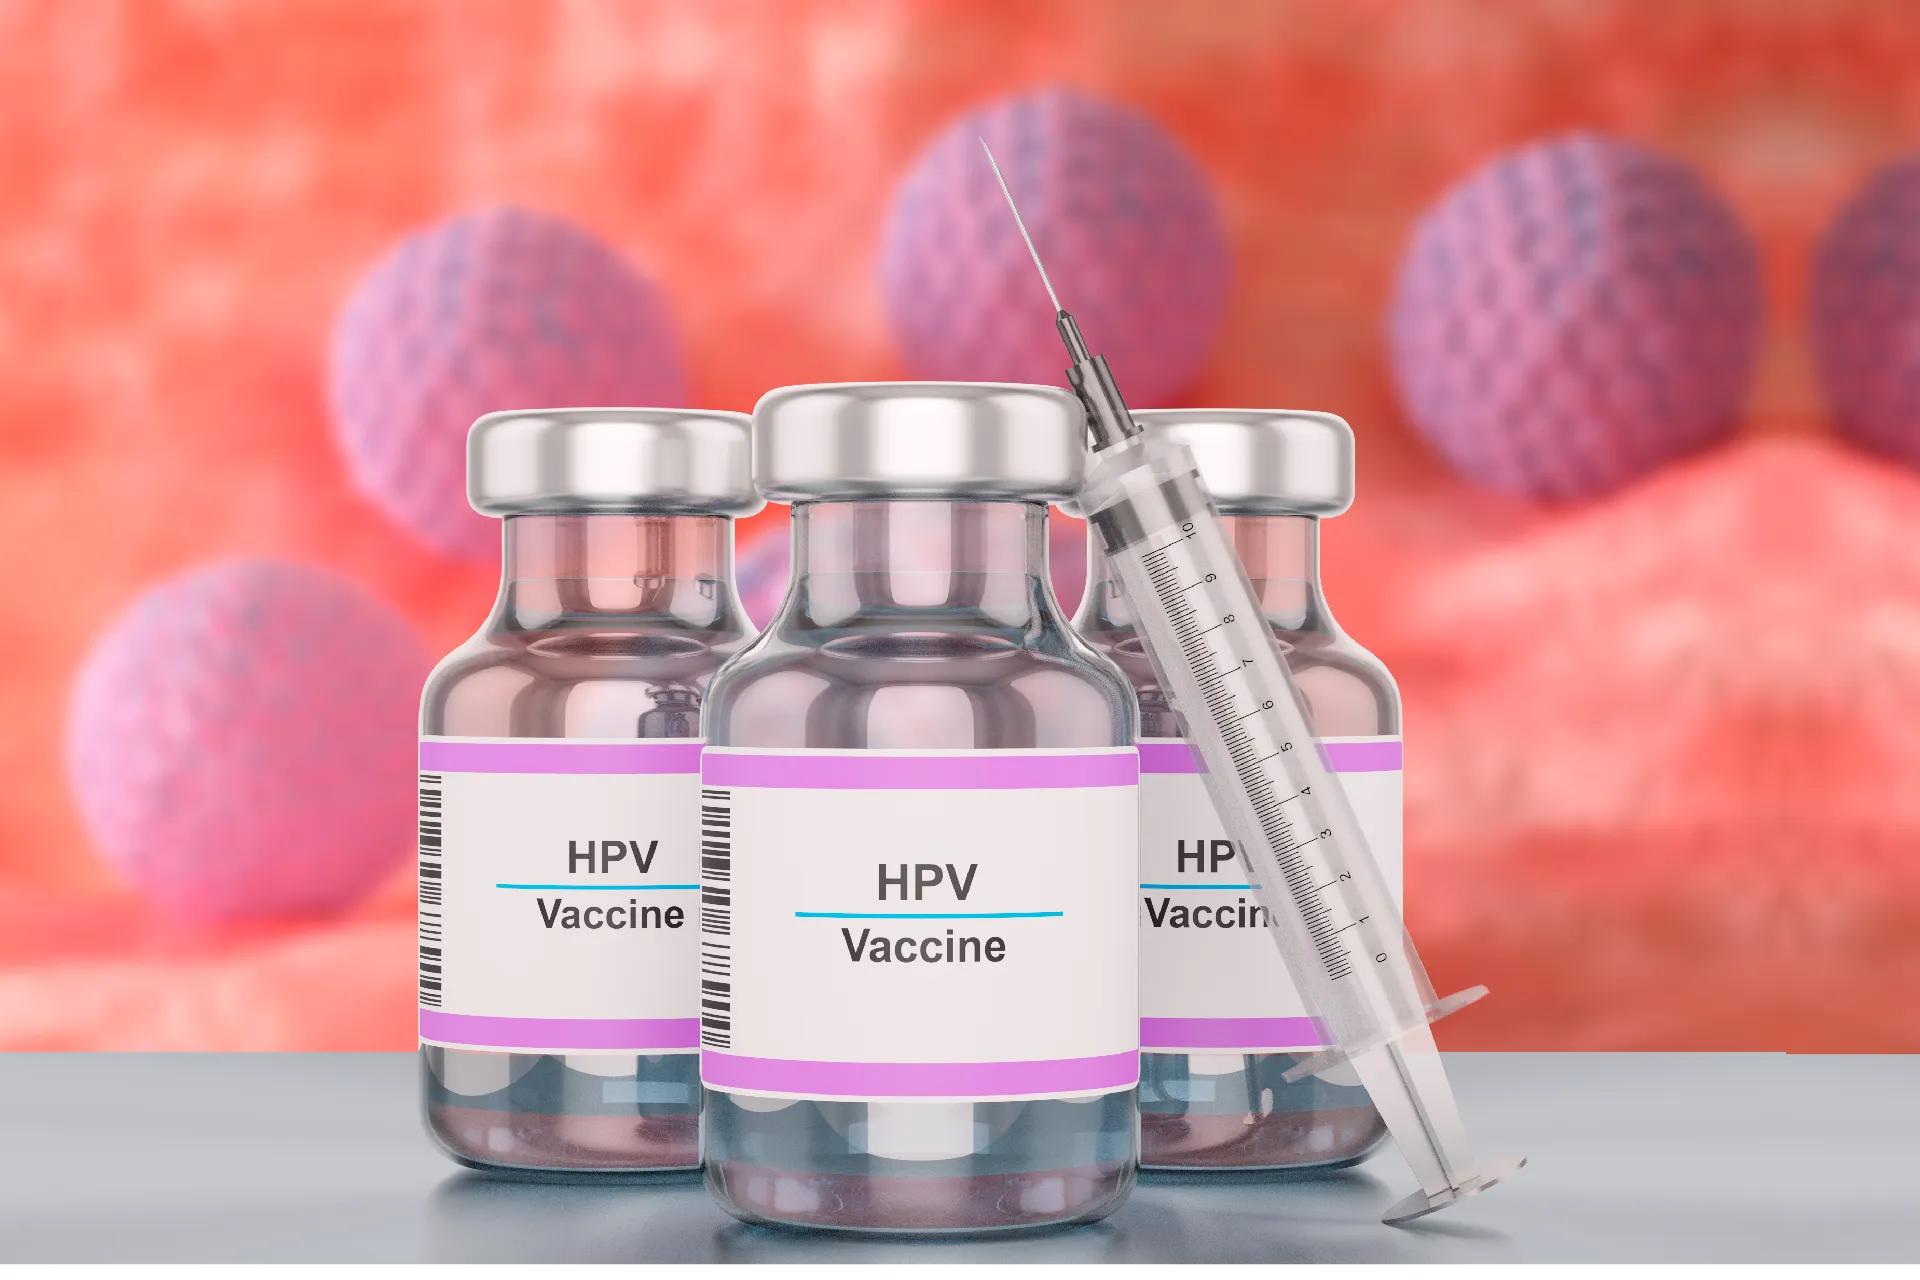 HPV ಲಸಿಕೆಗಳು: ಉಪಯೋಗಗಳು, ಪ್ರಮಾಣಗಳು, ವ್ಯಾಕ್ಸಿನೇಷನ್ ಡ್ರೈವ್ ಮತ್ತು ಪ್ರಾಮುಖ್ಯತೆ